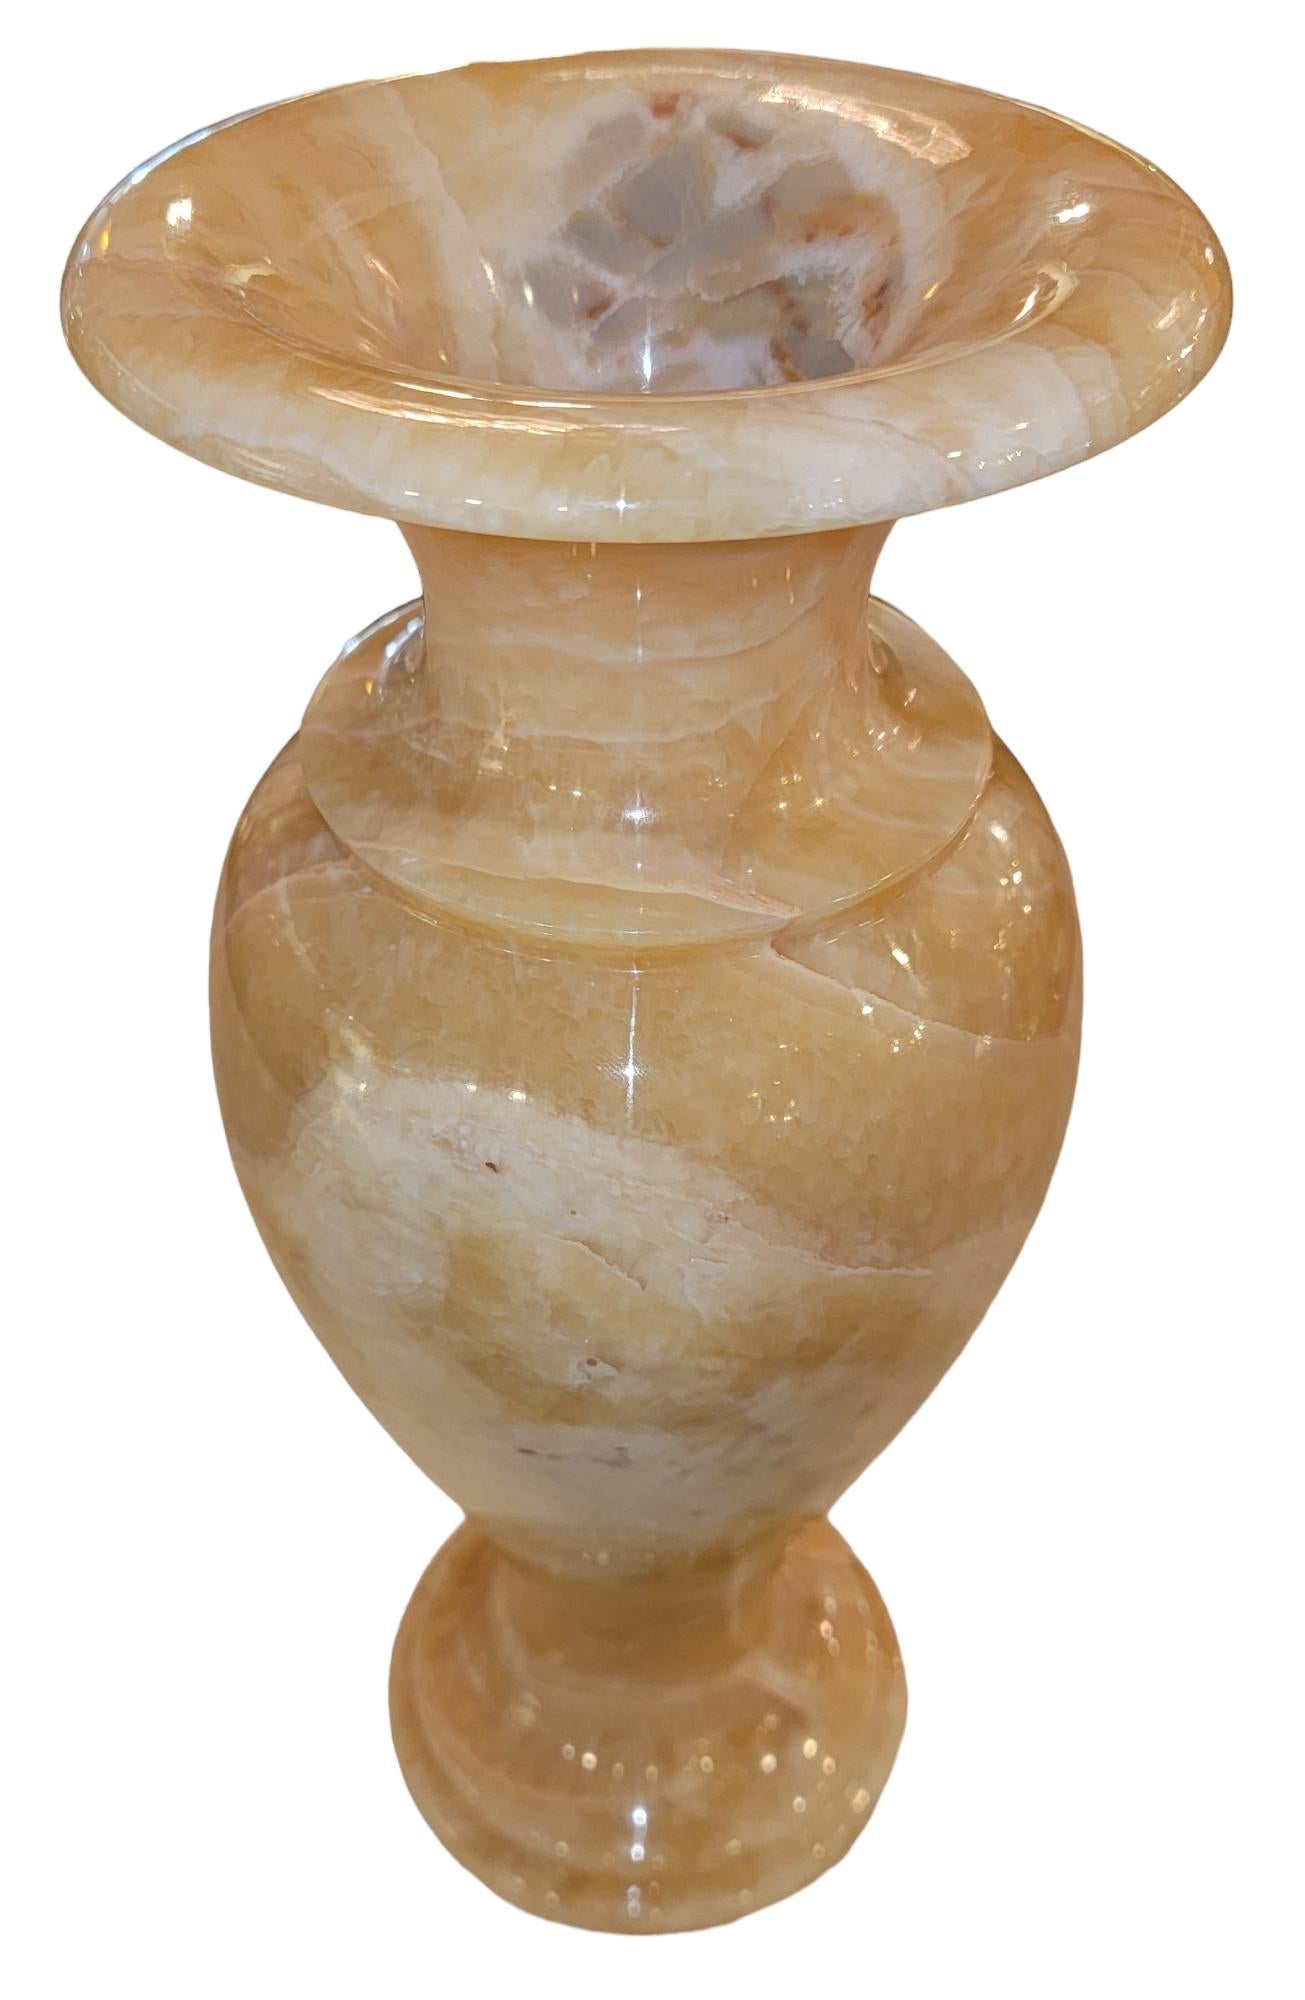 Antike Marmor Variegated Vase misst ca. - 5,5 Durchmesser x 13,5 hoch
